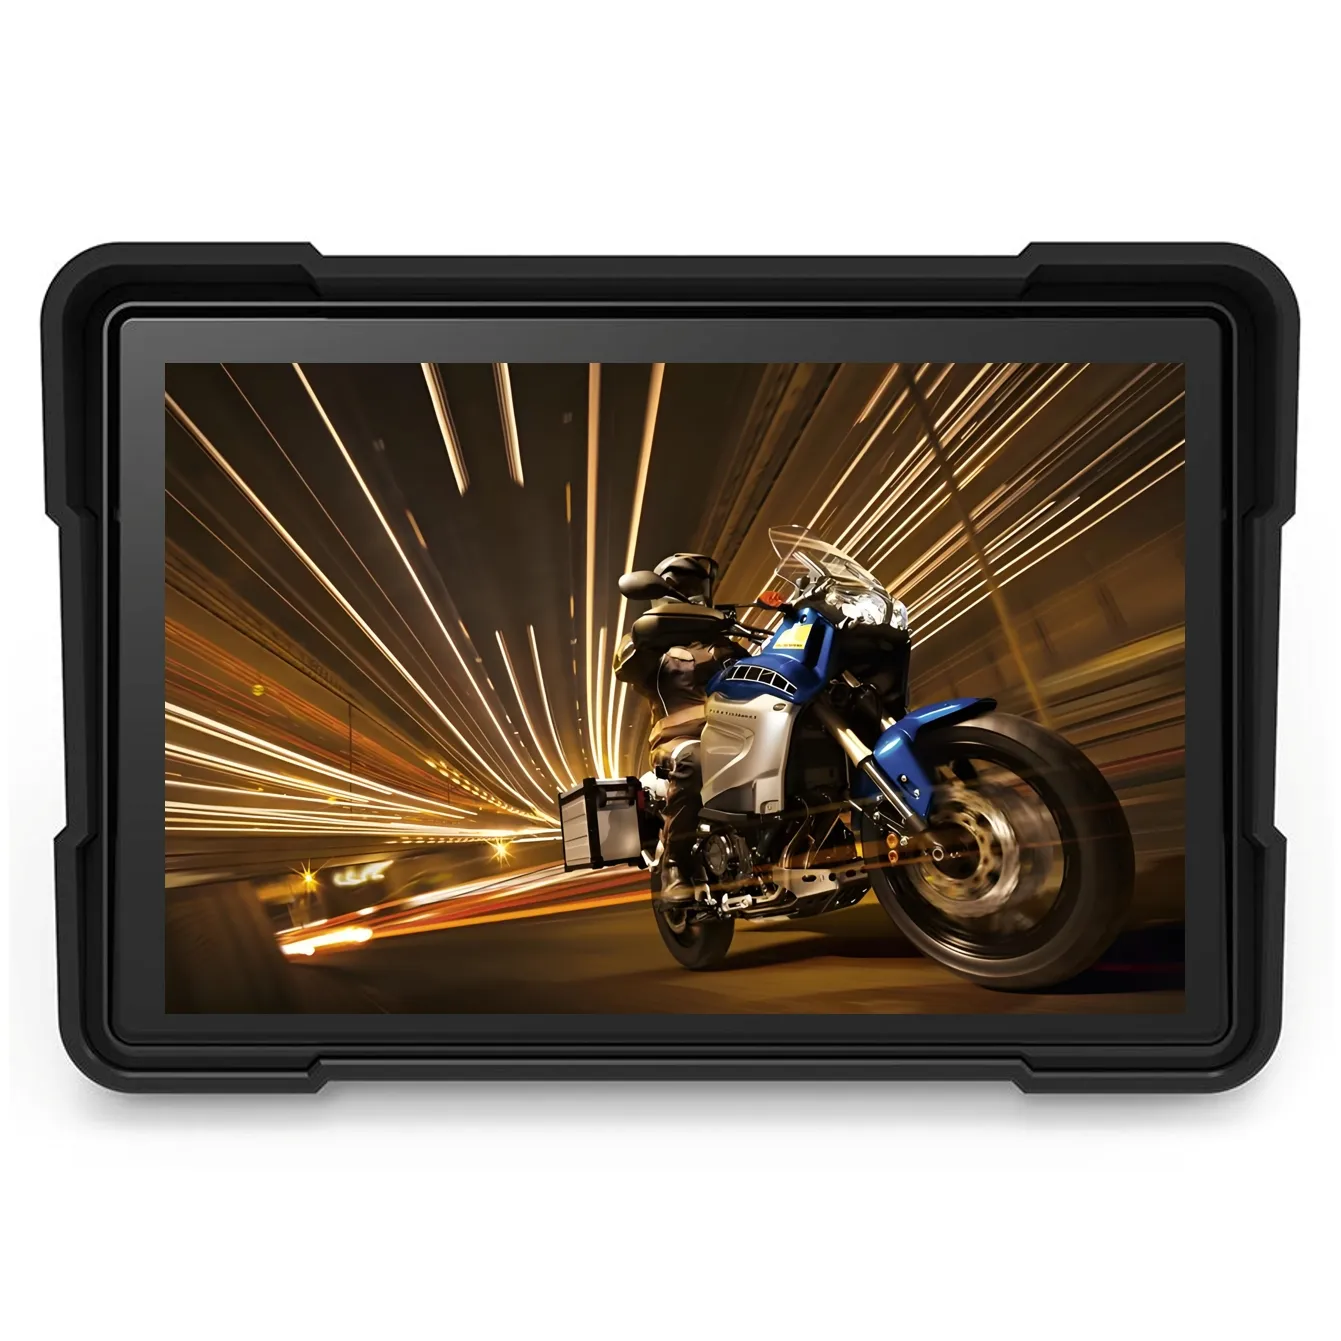 Stokta Zmecar Suzuki Bluetooth FM motosiklet Navigator dokunmatik ekran ve Android oto motosiklet bilgilendirme ile donatılmış